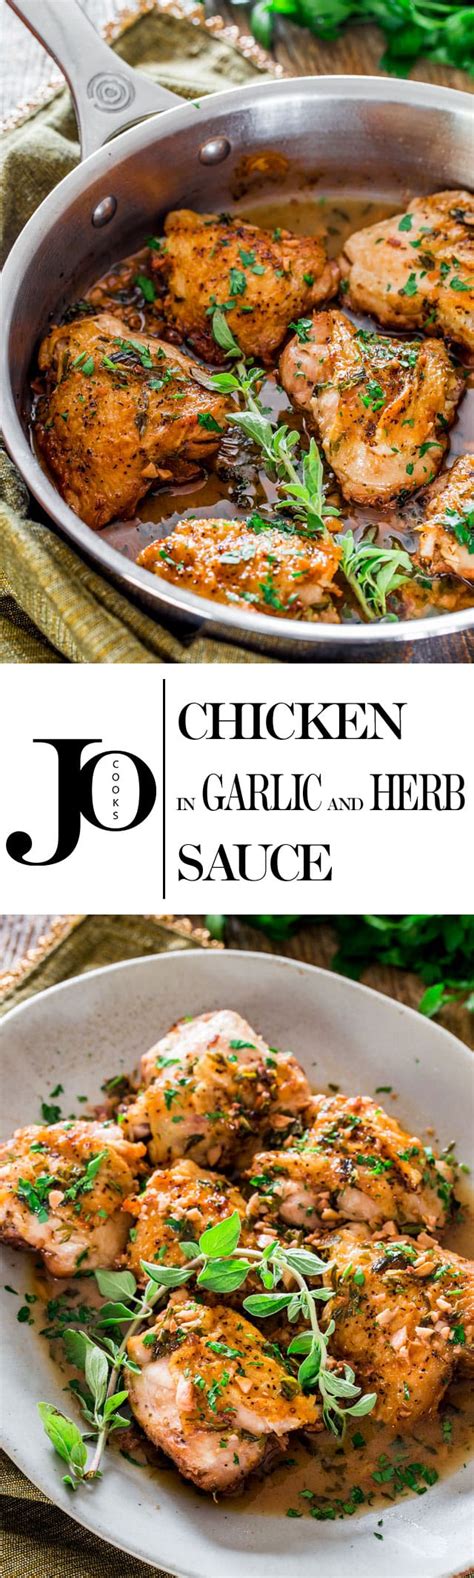 chicken-with-garlic-herb-sauce image